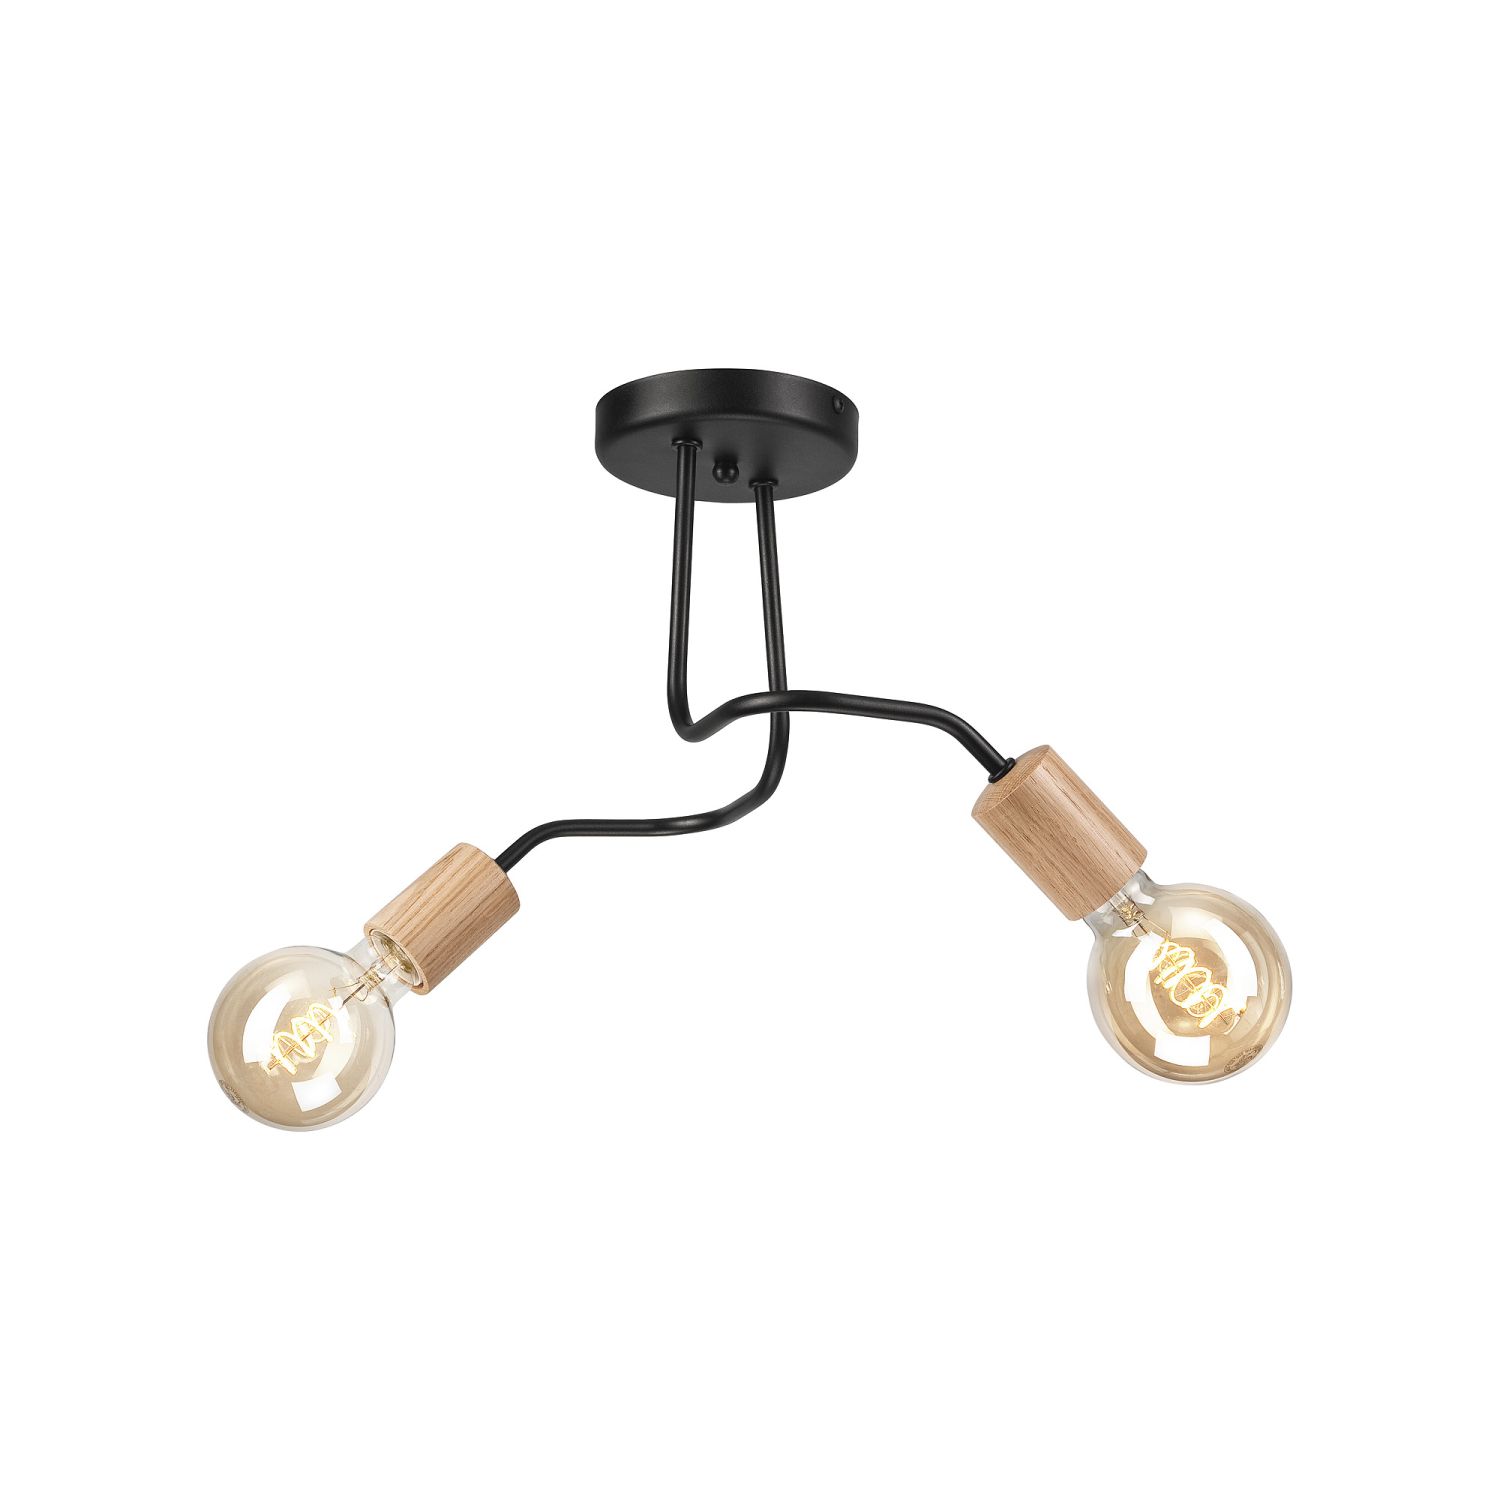 Deckenlampe Schwarz 2-flammig E27 Metall Holz Retro